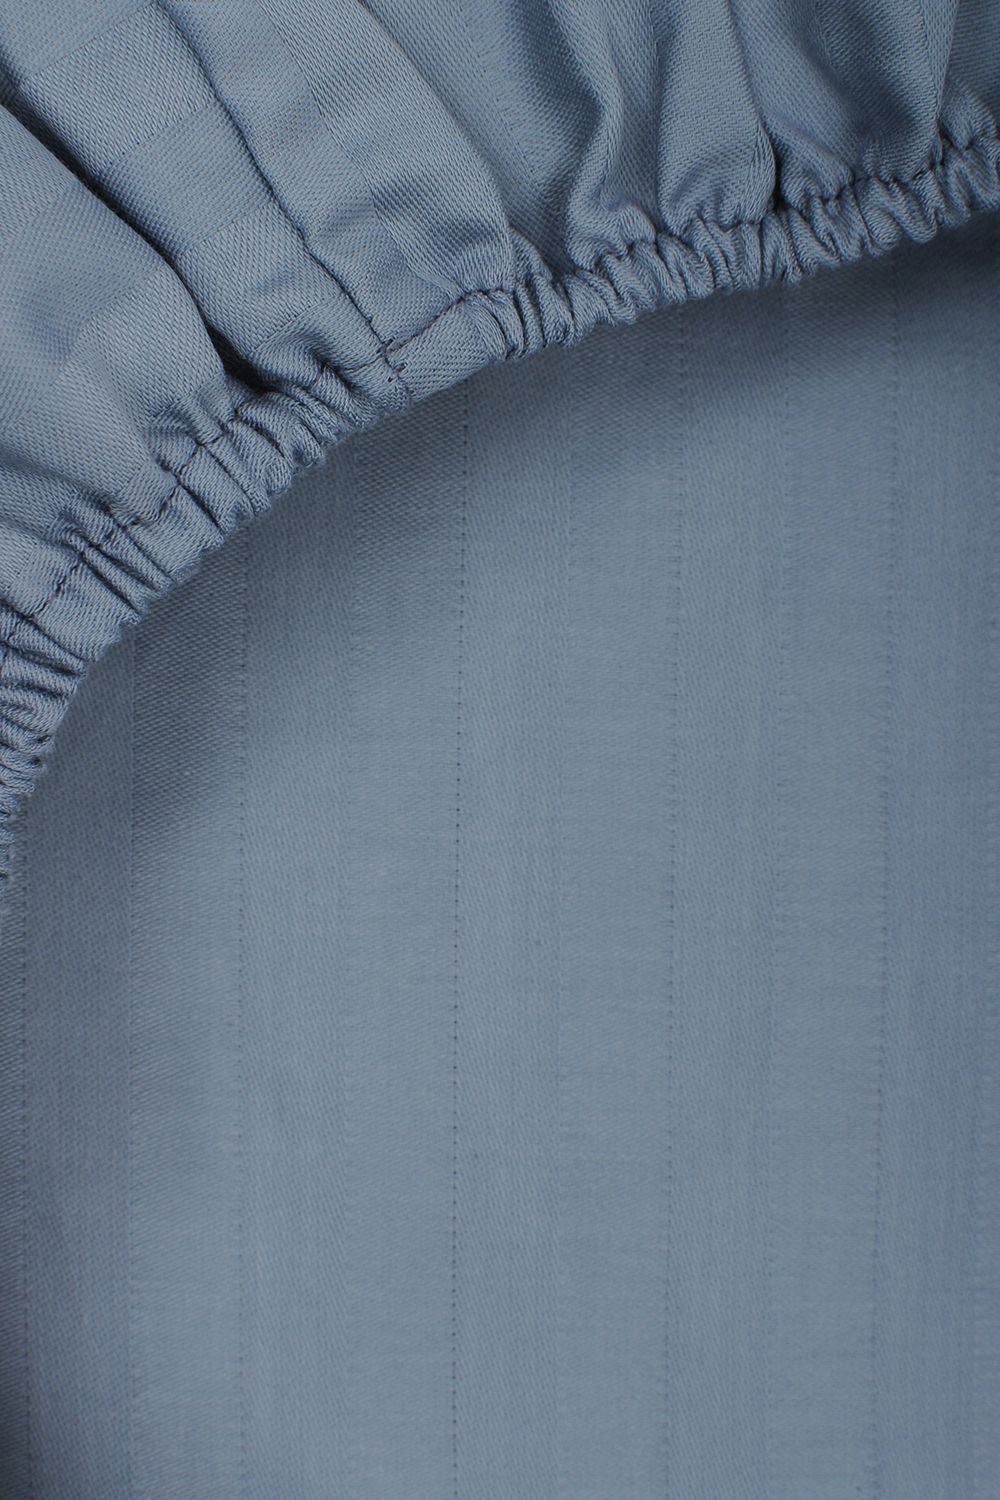 Простыня на резинке HoReCa 160х200х20, страйп-сатин, арт. 4869 - синий туман